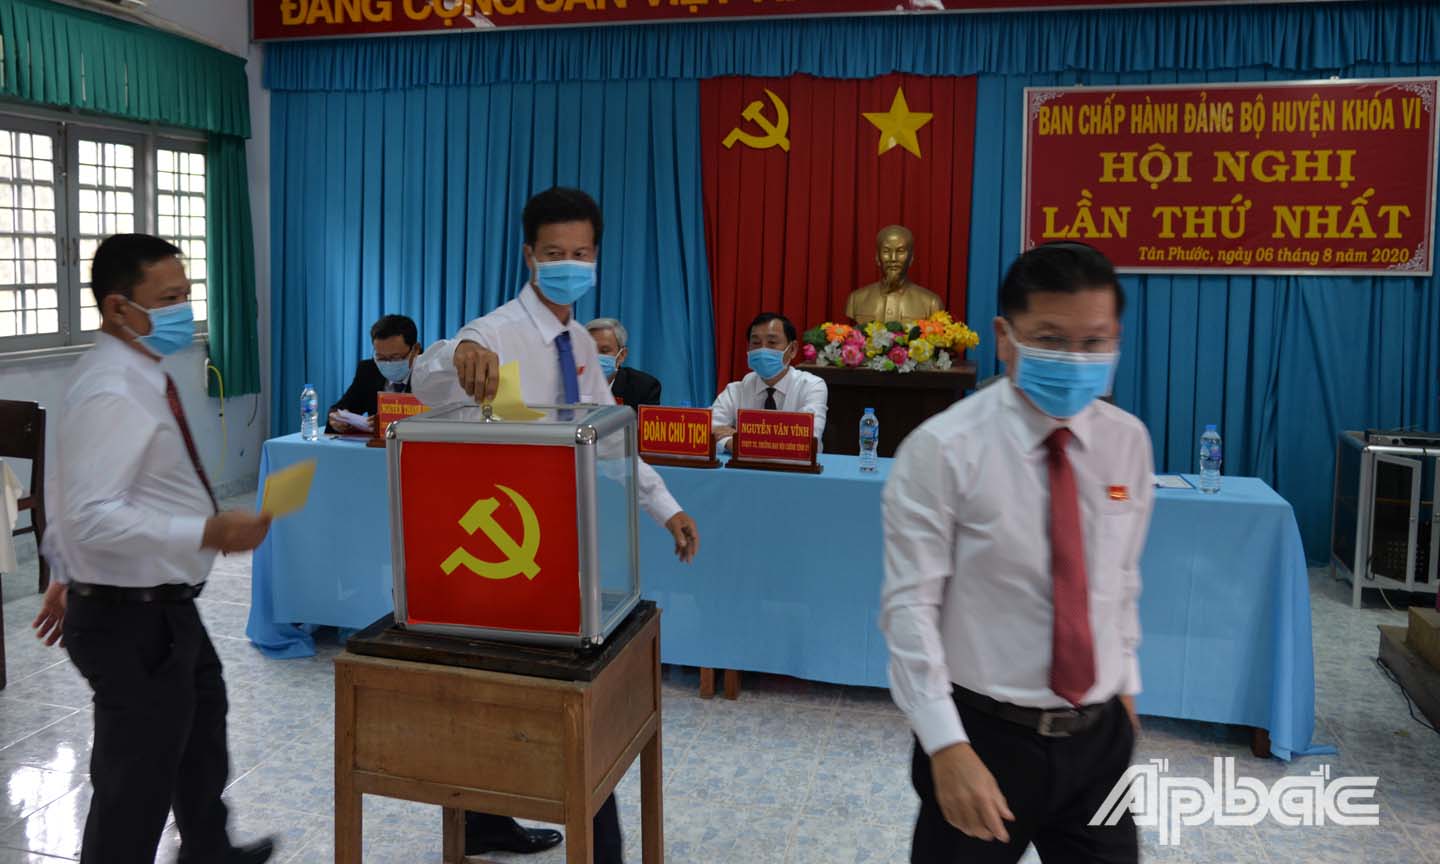 Các đại biểu bỏ phiếu bầu Ban Thường vụ Huyện ủy Tân Phước tại Hội nghị lần thứ Nhất Ban Chấp hành Đảng bộ huyện Tân Phước khóa VI.